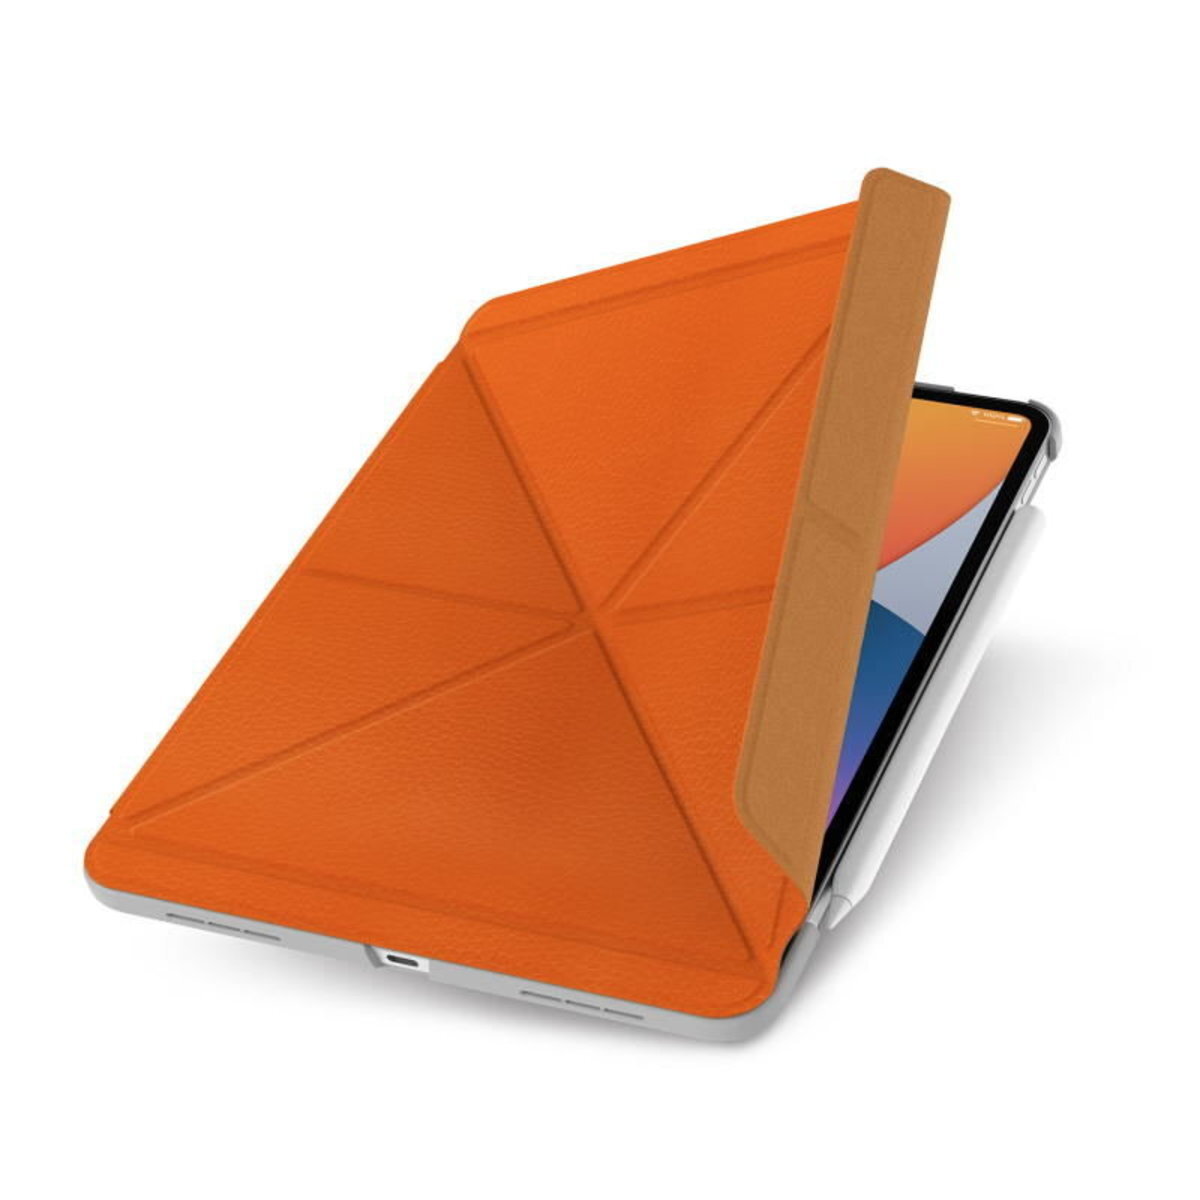 VersaCover 多角度前後保護套 - iPad Air (4th gen.) /Pro (2nd/1st gen.) - 橙色 (99MO056812)